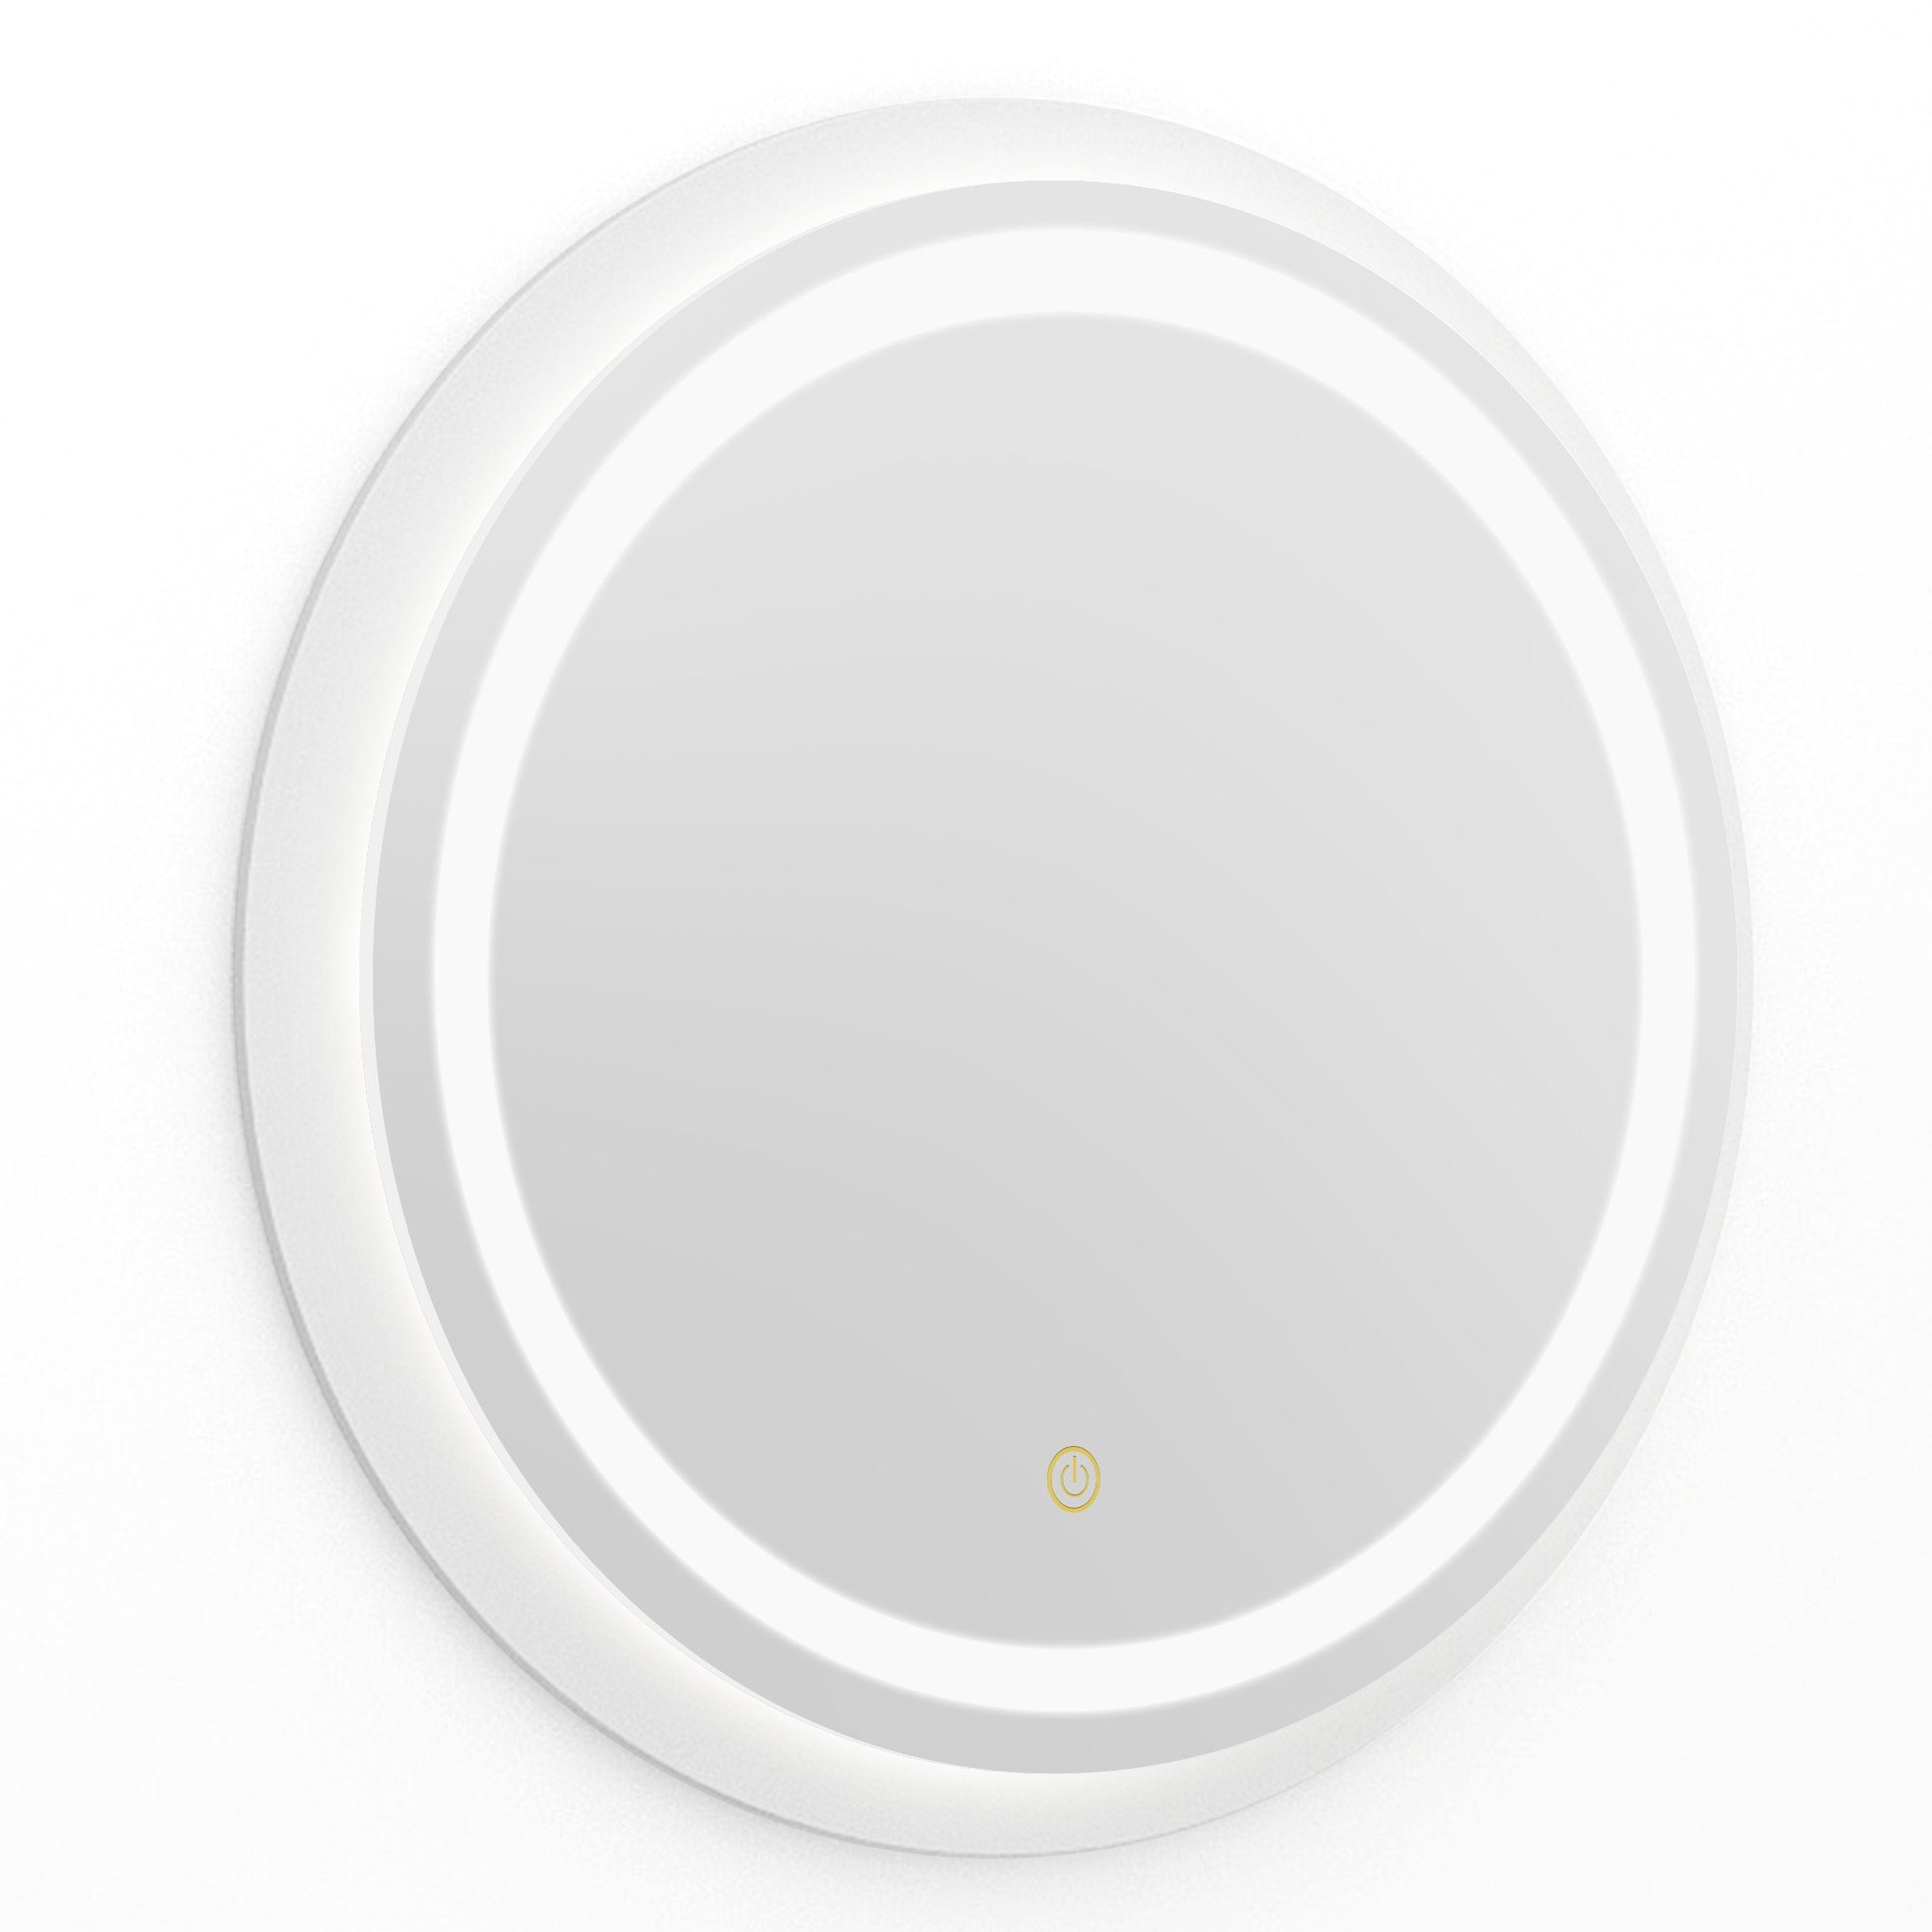 Wasserdicht LED-Spiegel Spiegel, Touch-Schalter Kosmetikspiegel, Badspiegel 54x54CM, mit Make-up Dedom